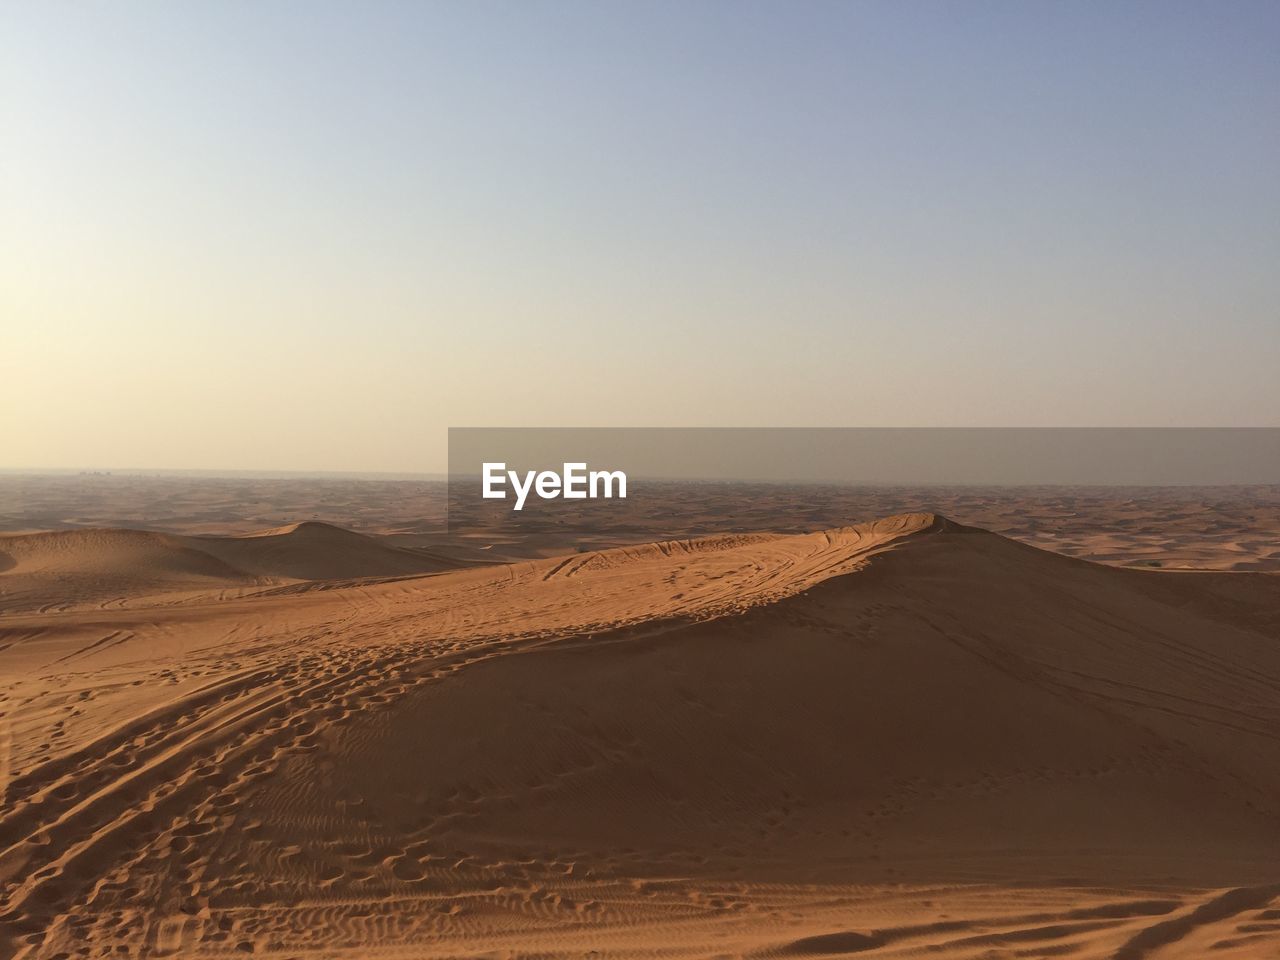 Desert dune